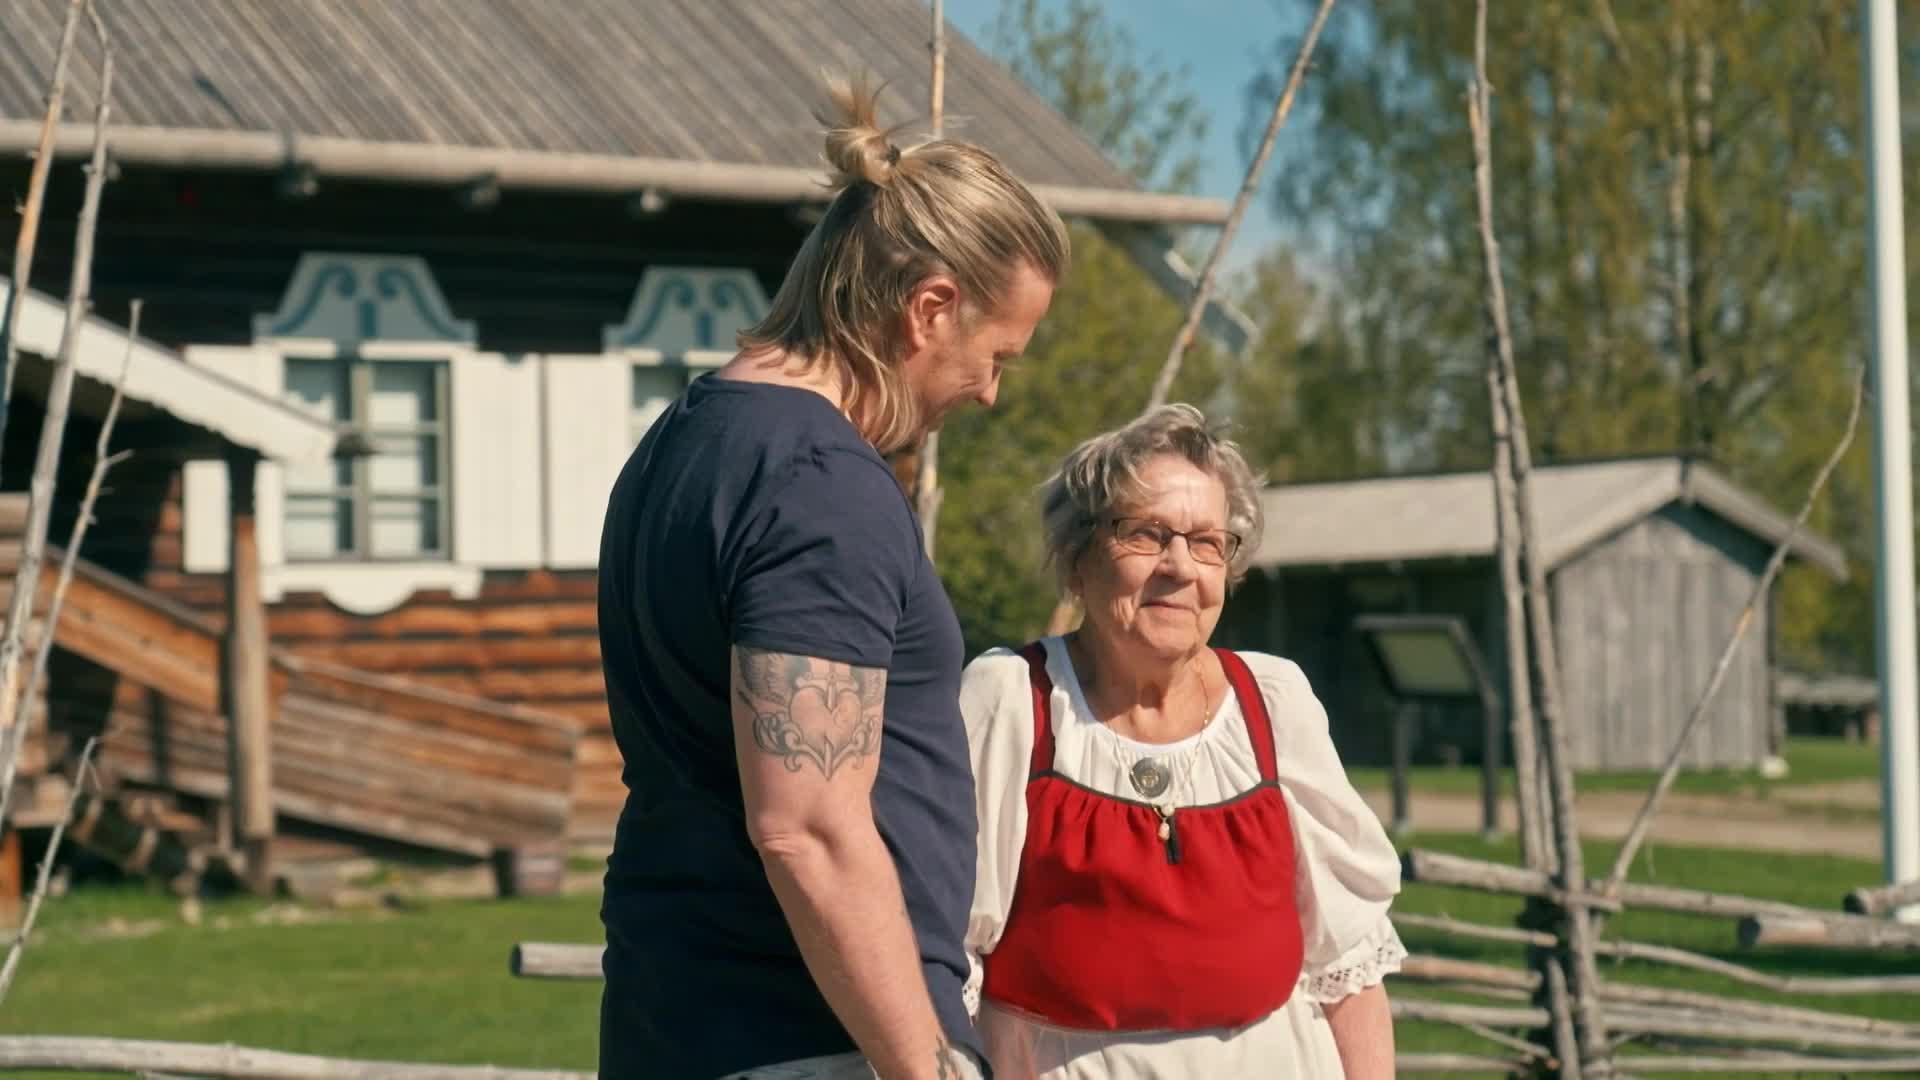 Sami Kuronen vierailee lapsuutensa maisemissa Ilomantsissa – liikuttava hetki isoäidin kanssa saa herkistymään